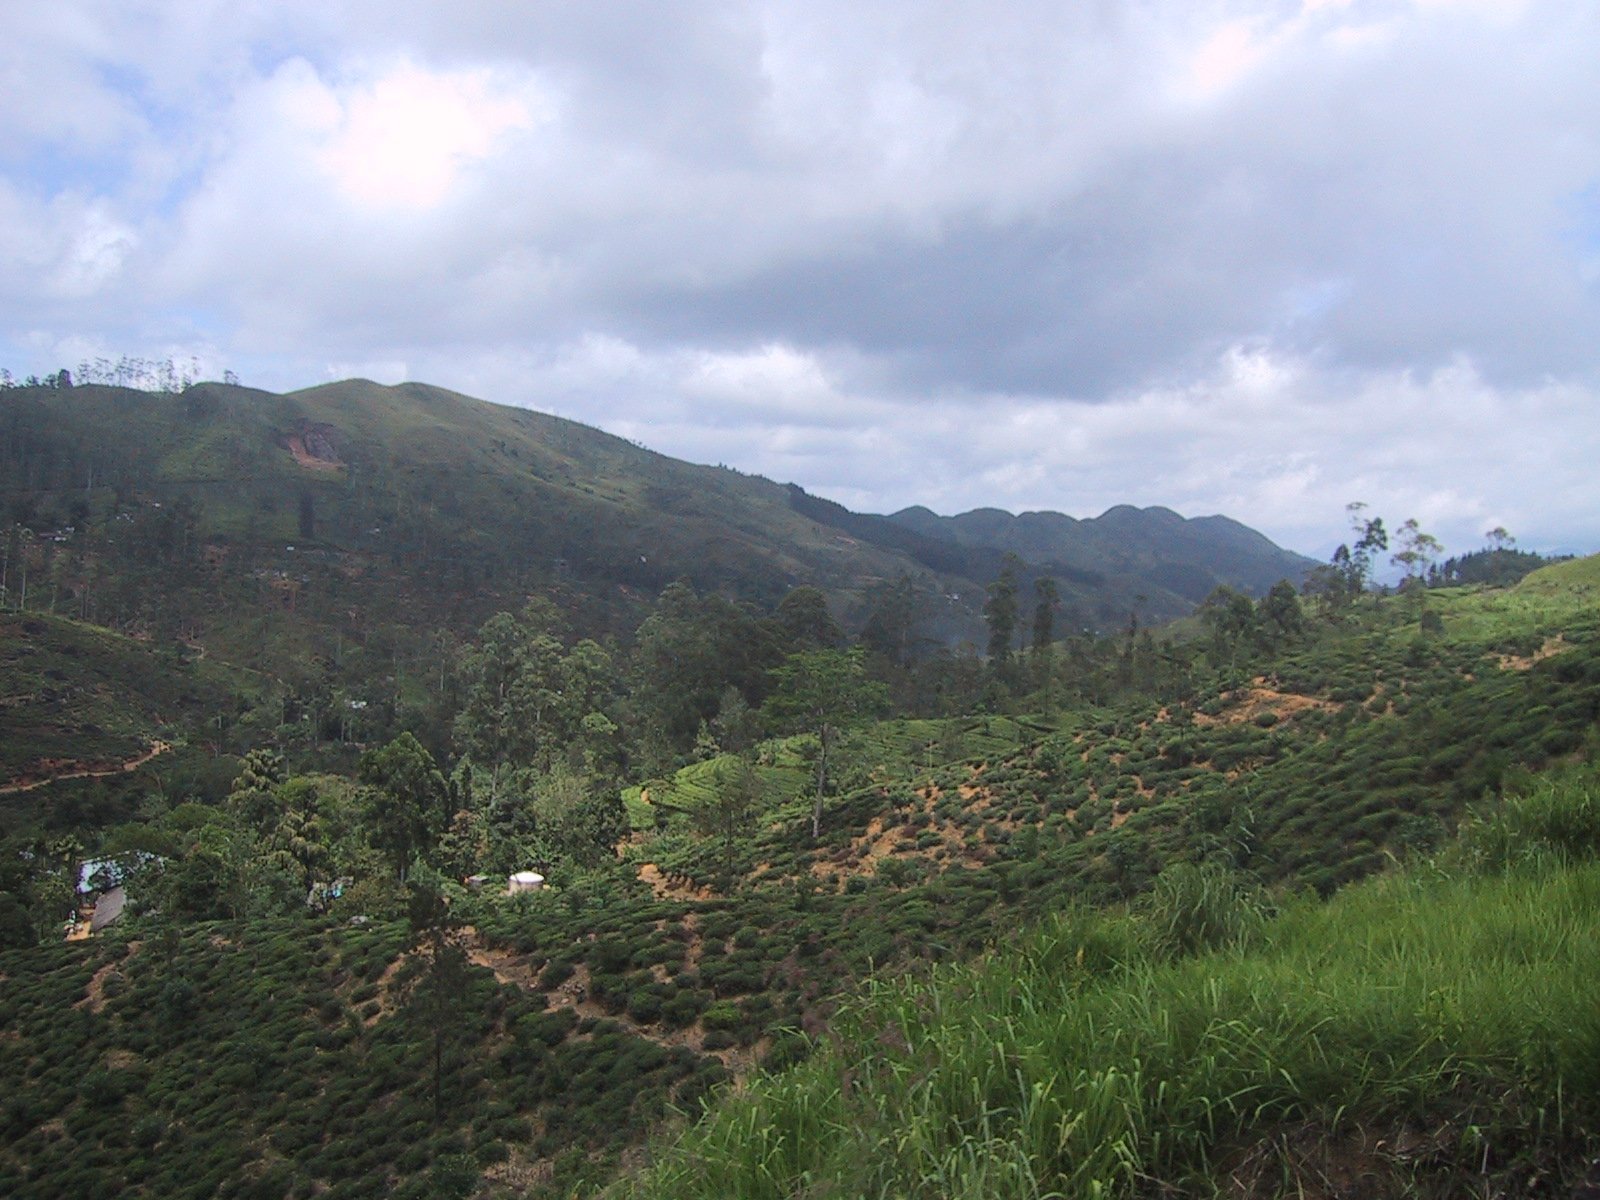 Overlooking hills of tea bushes